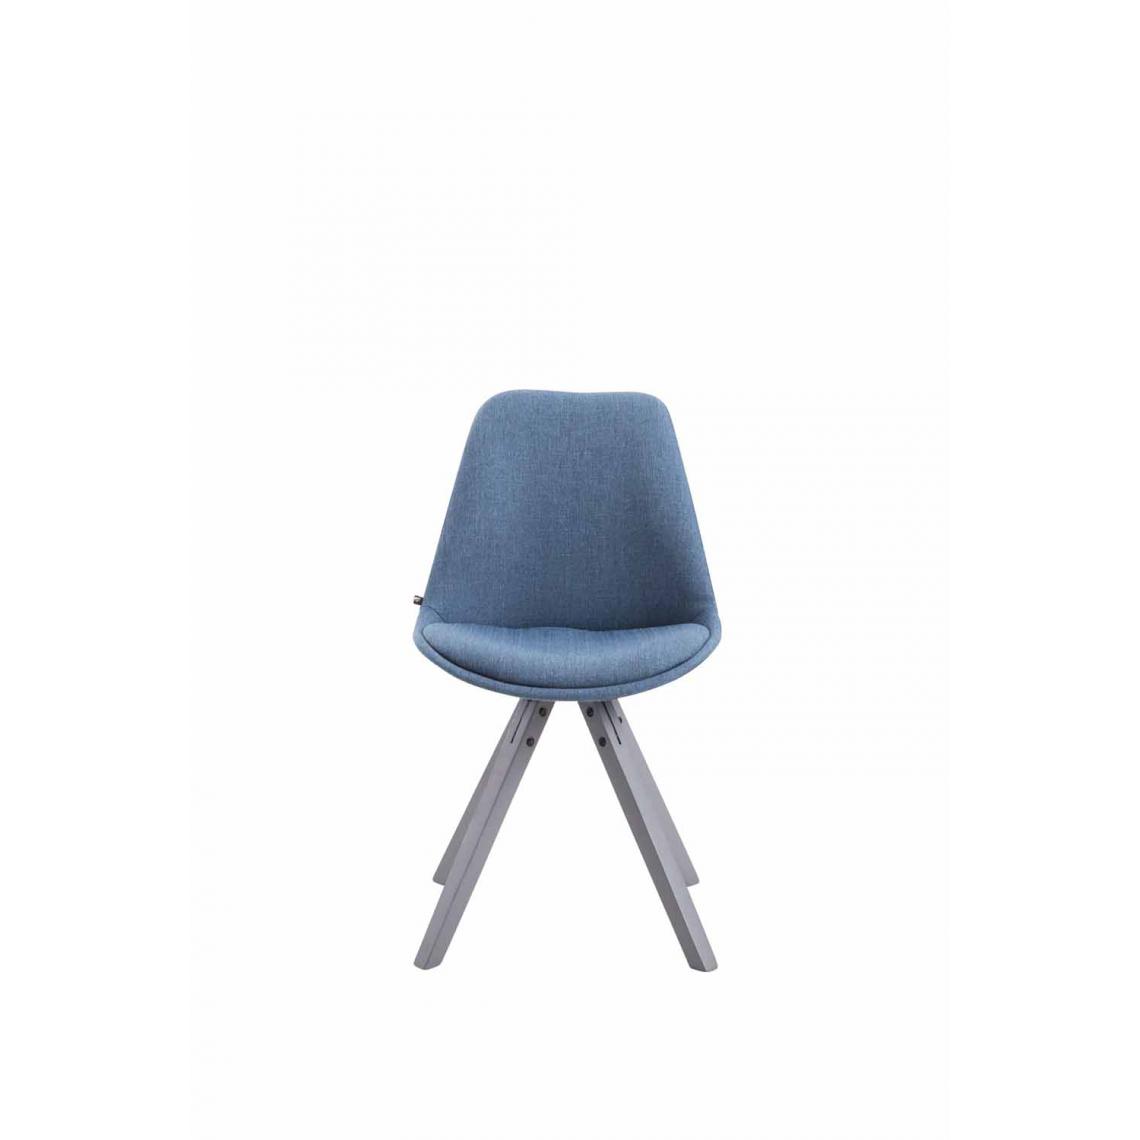 Icaverne - Magnifique Chaise visiteur tissu categorie Katmandou Square gris couleur bleu - Chaises